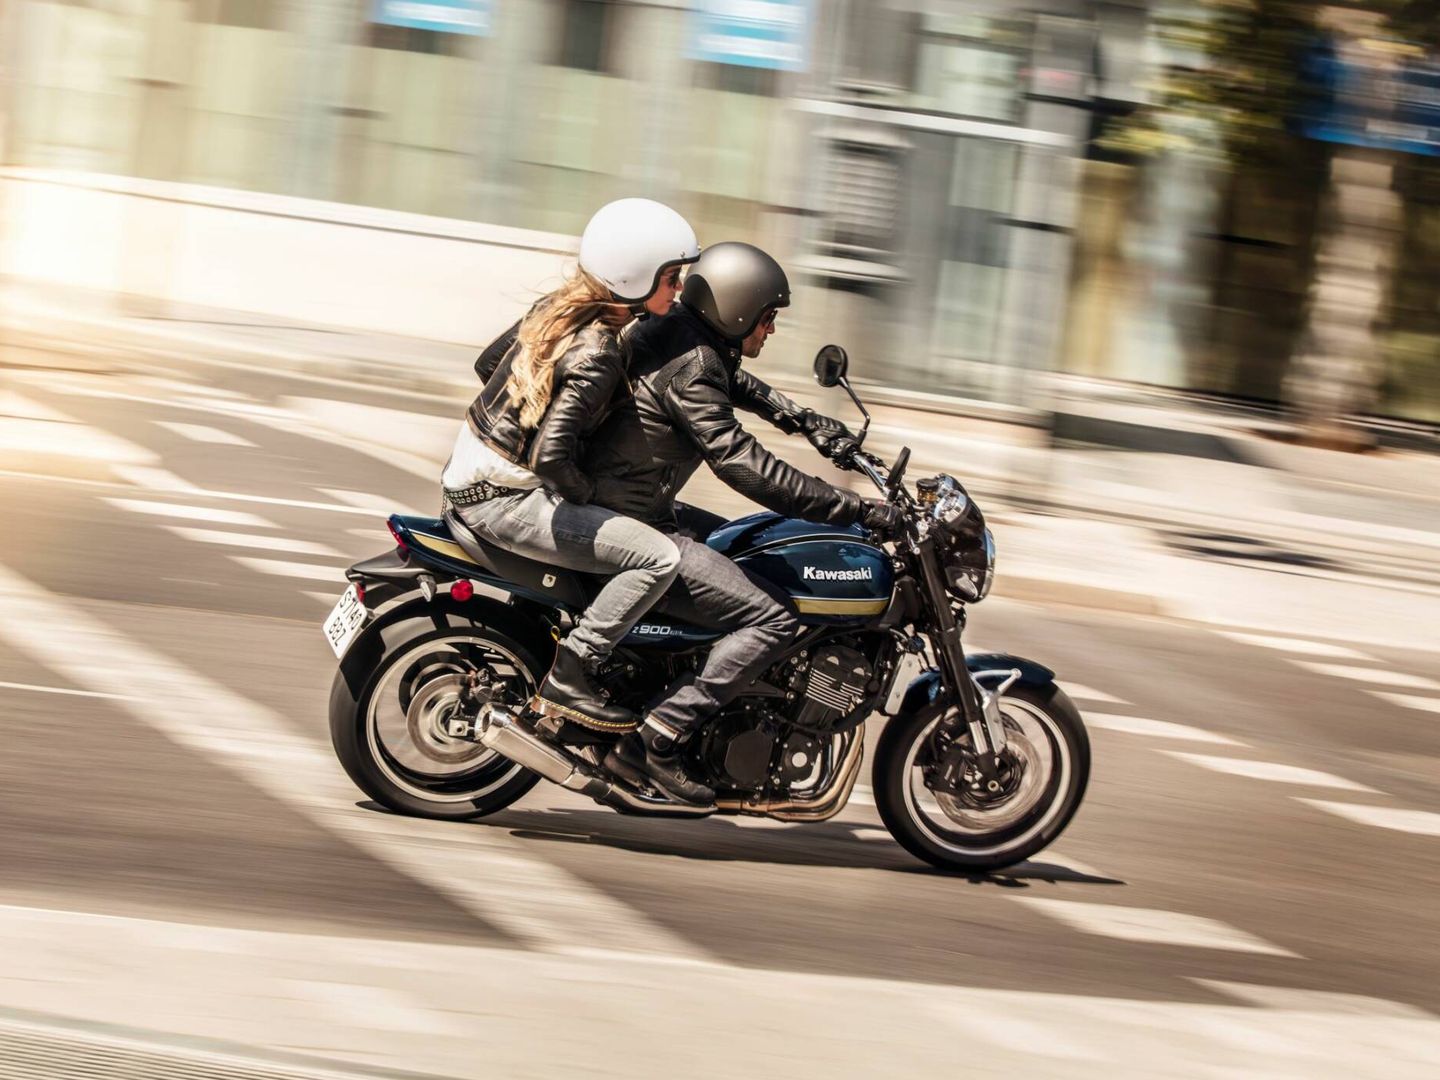 La Z900RS, única moto 'de verdad' entre los 10 modelos más vendidos en España, destaca por una magnífica ergonomía.